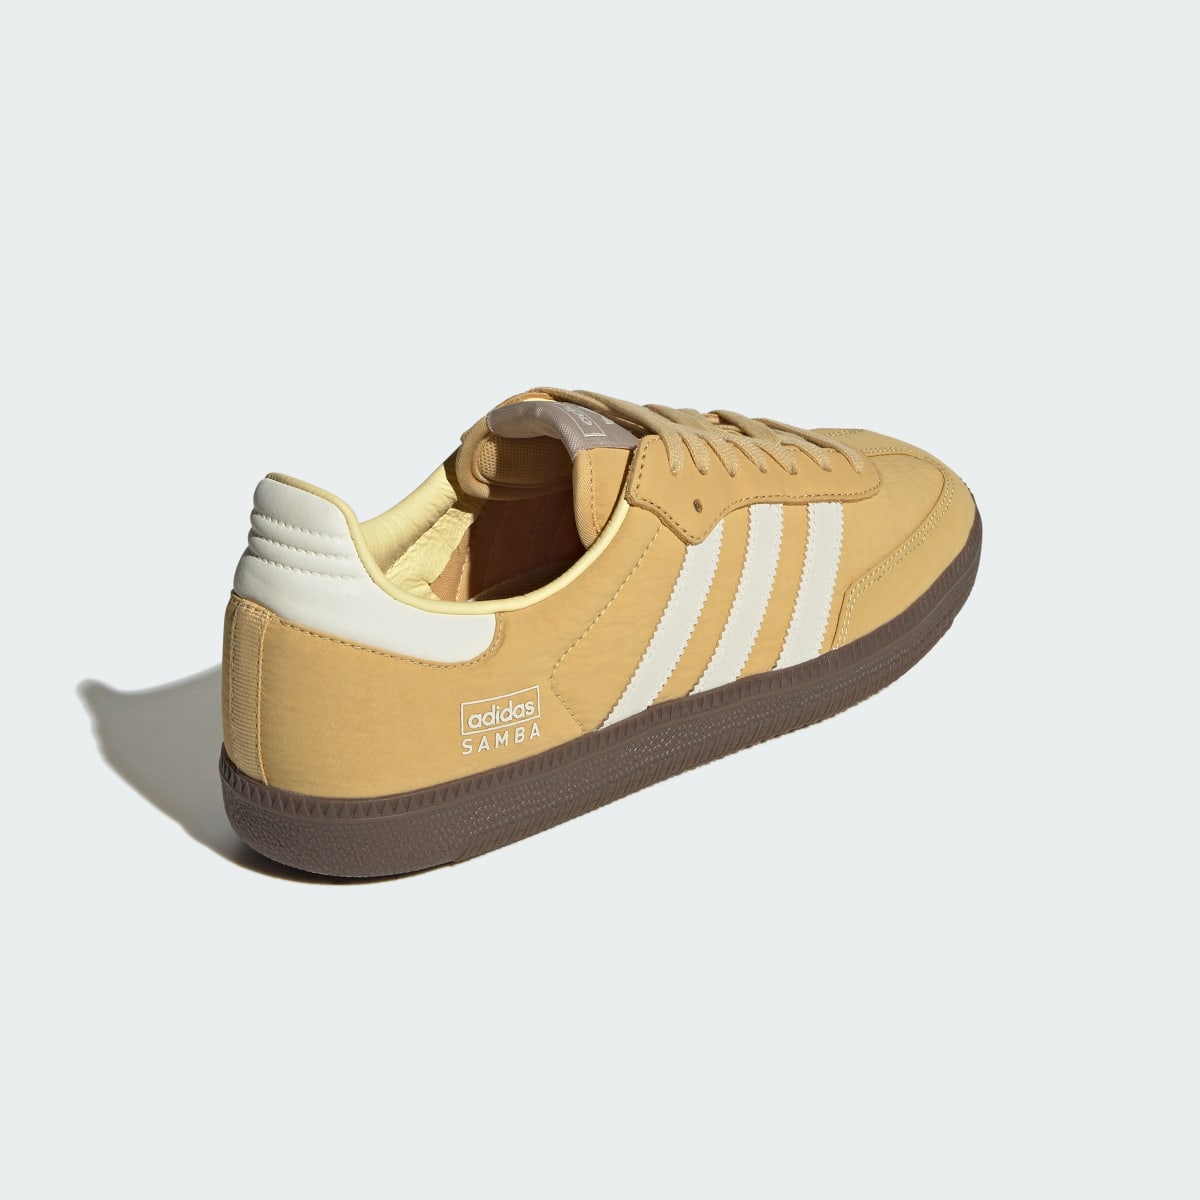 Adidas Samba OG Shoes. 9